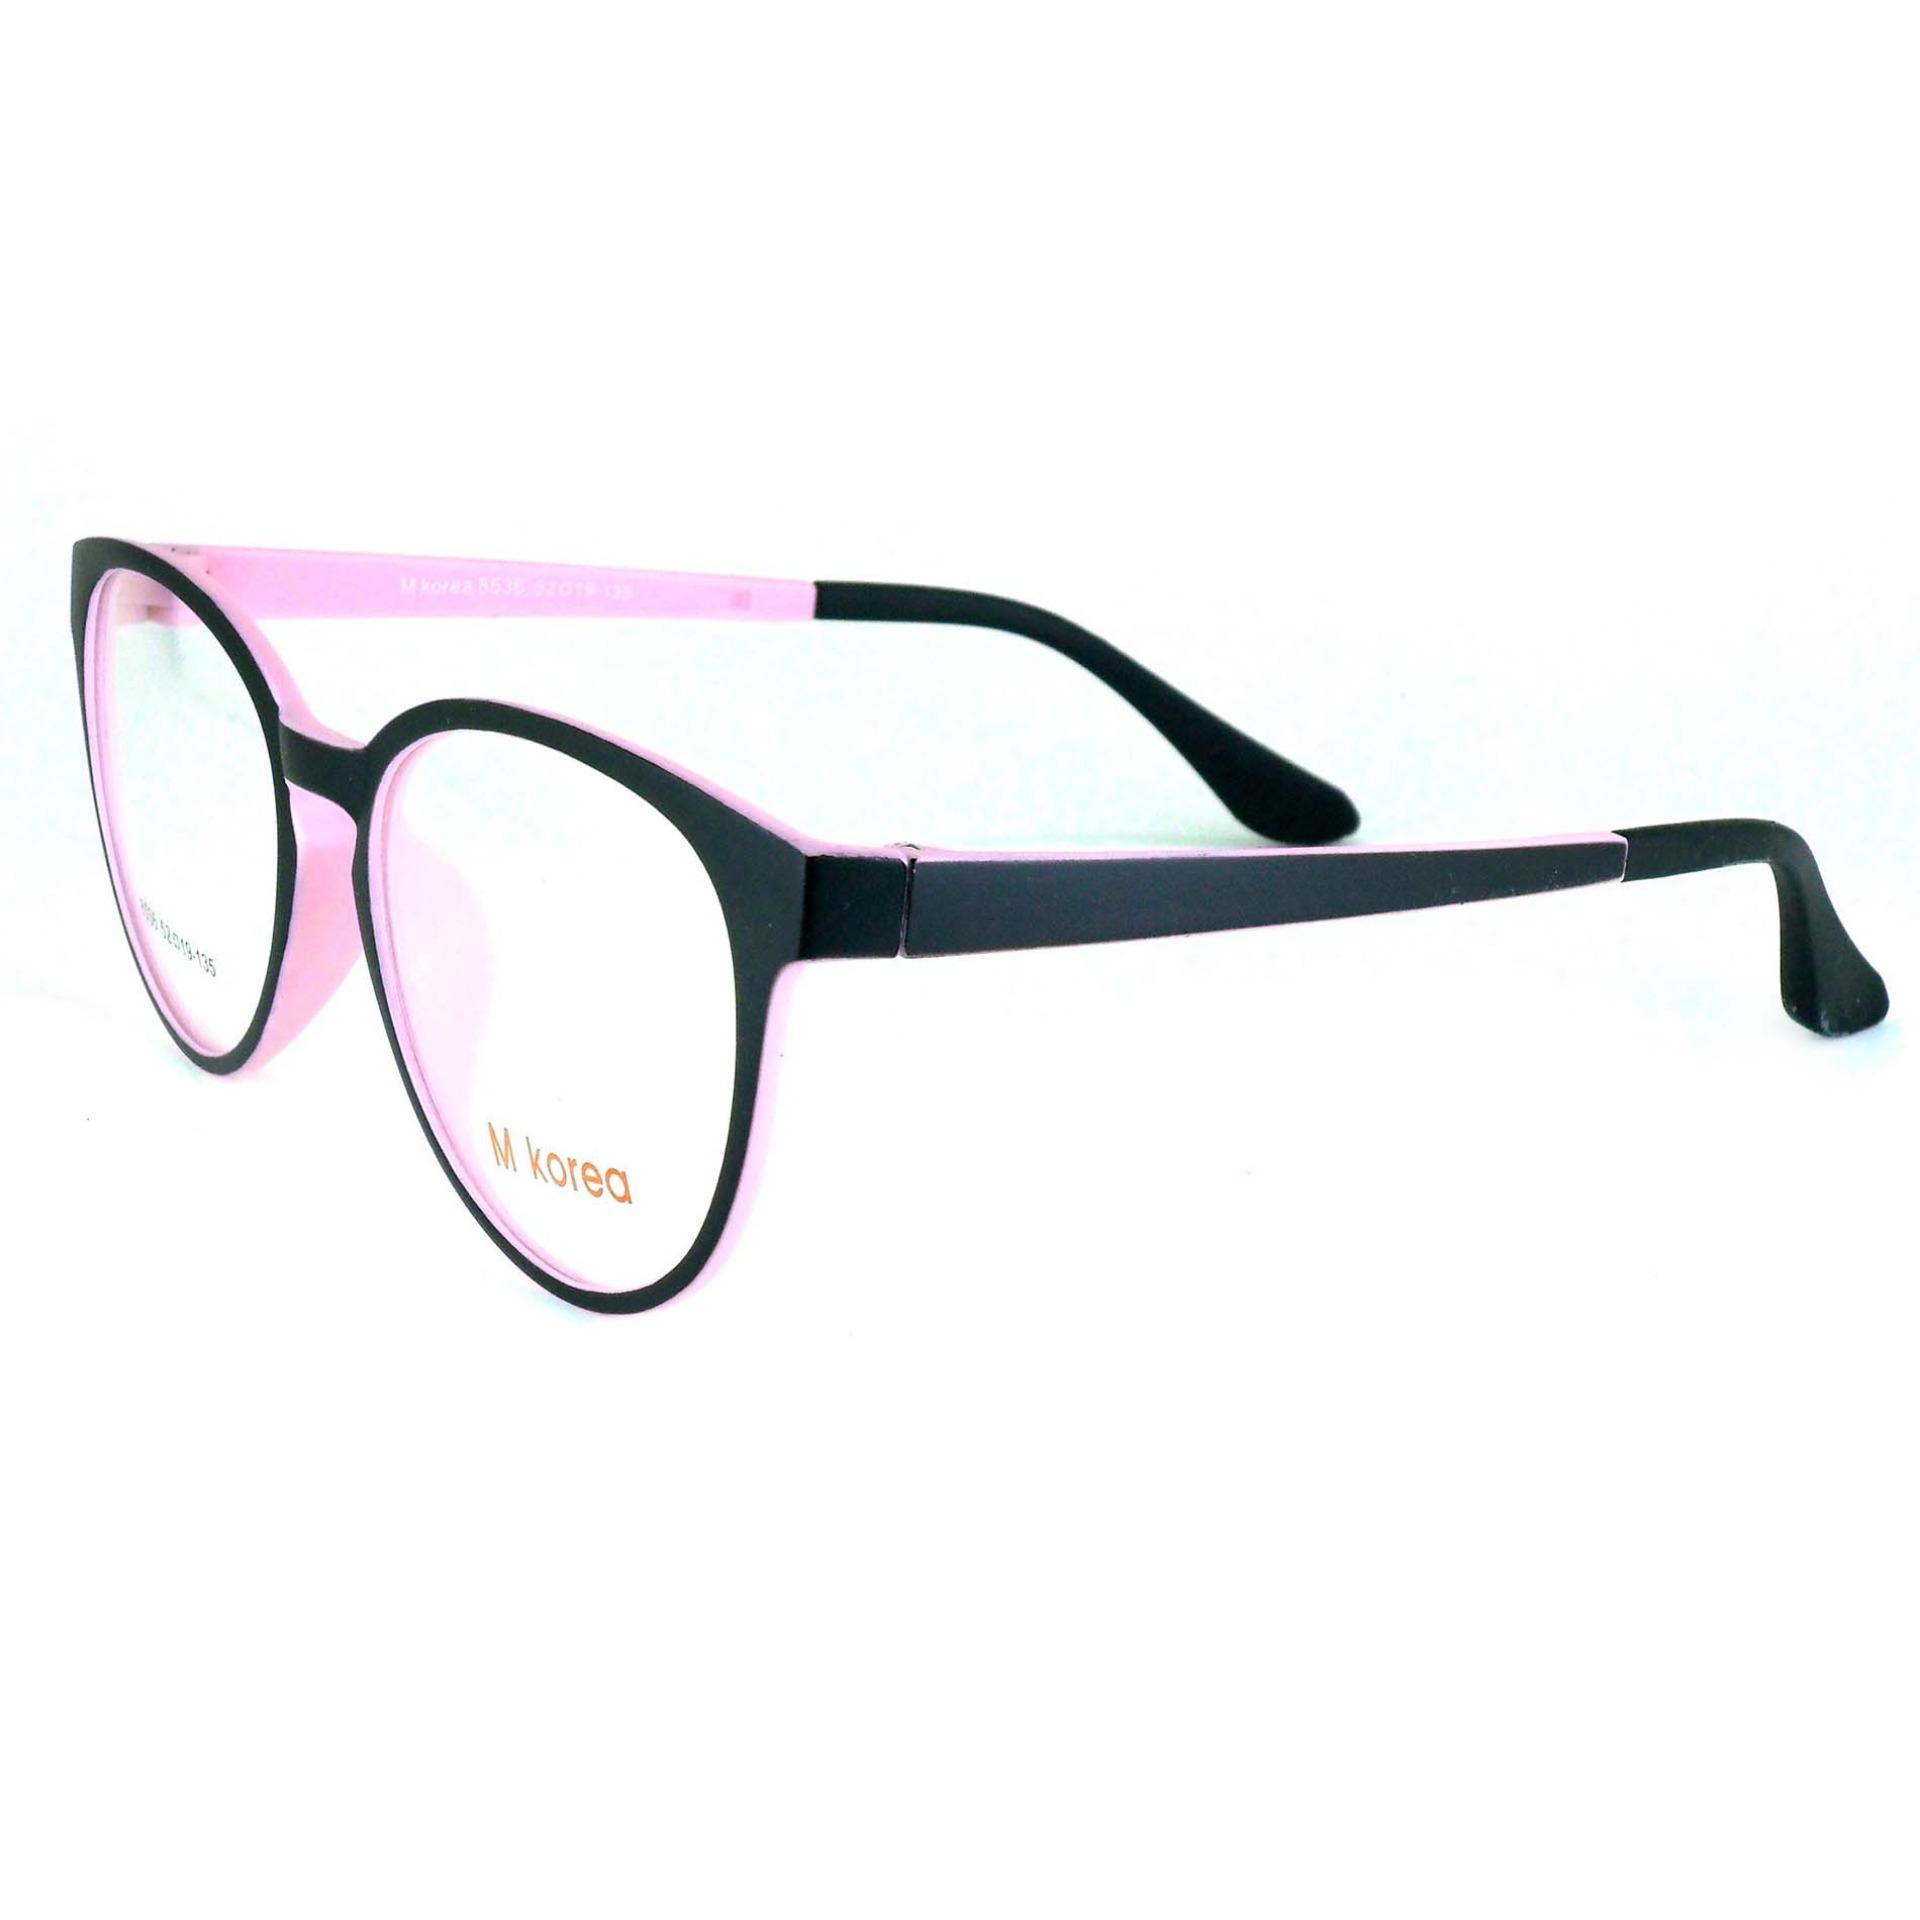 M Korea แว่นตา รุ่น 8536 ทรงสปอร์ต วัสดุ TR-90 เบาและยืดหยุนได้สูง ขาข้อต่อ ( สำหรับตัดเลนส์ ) กรอบแว่นตา แว่นสายตา แฟชั่น EyewearTop Glasses